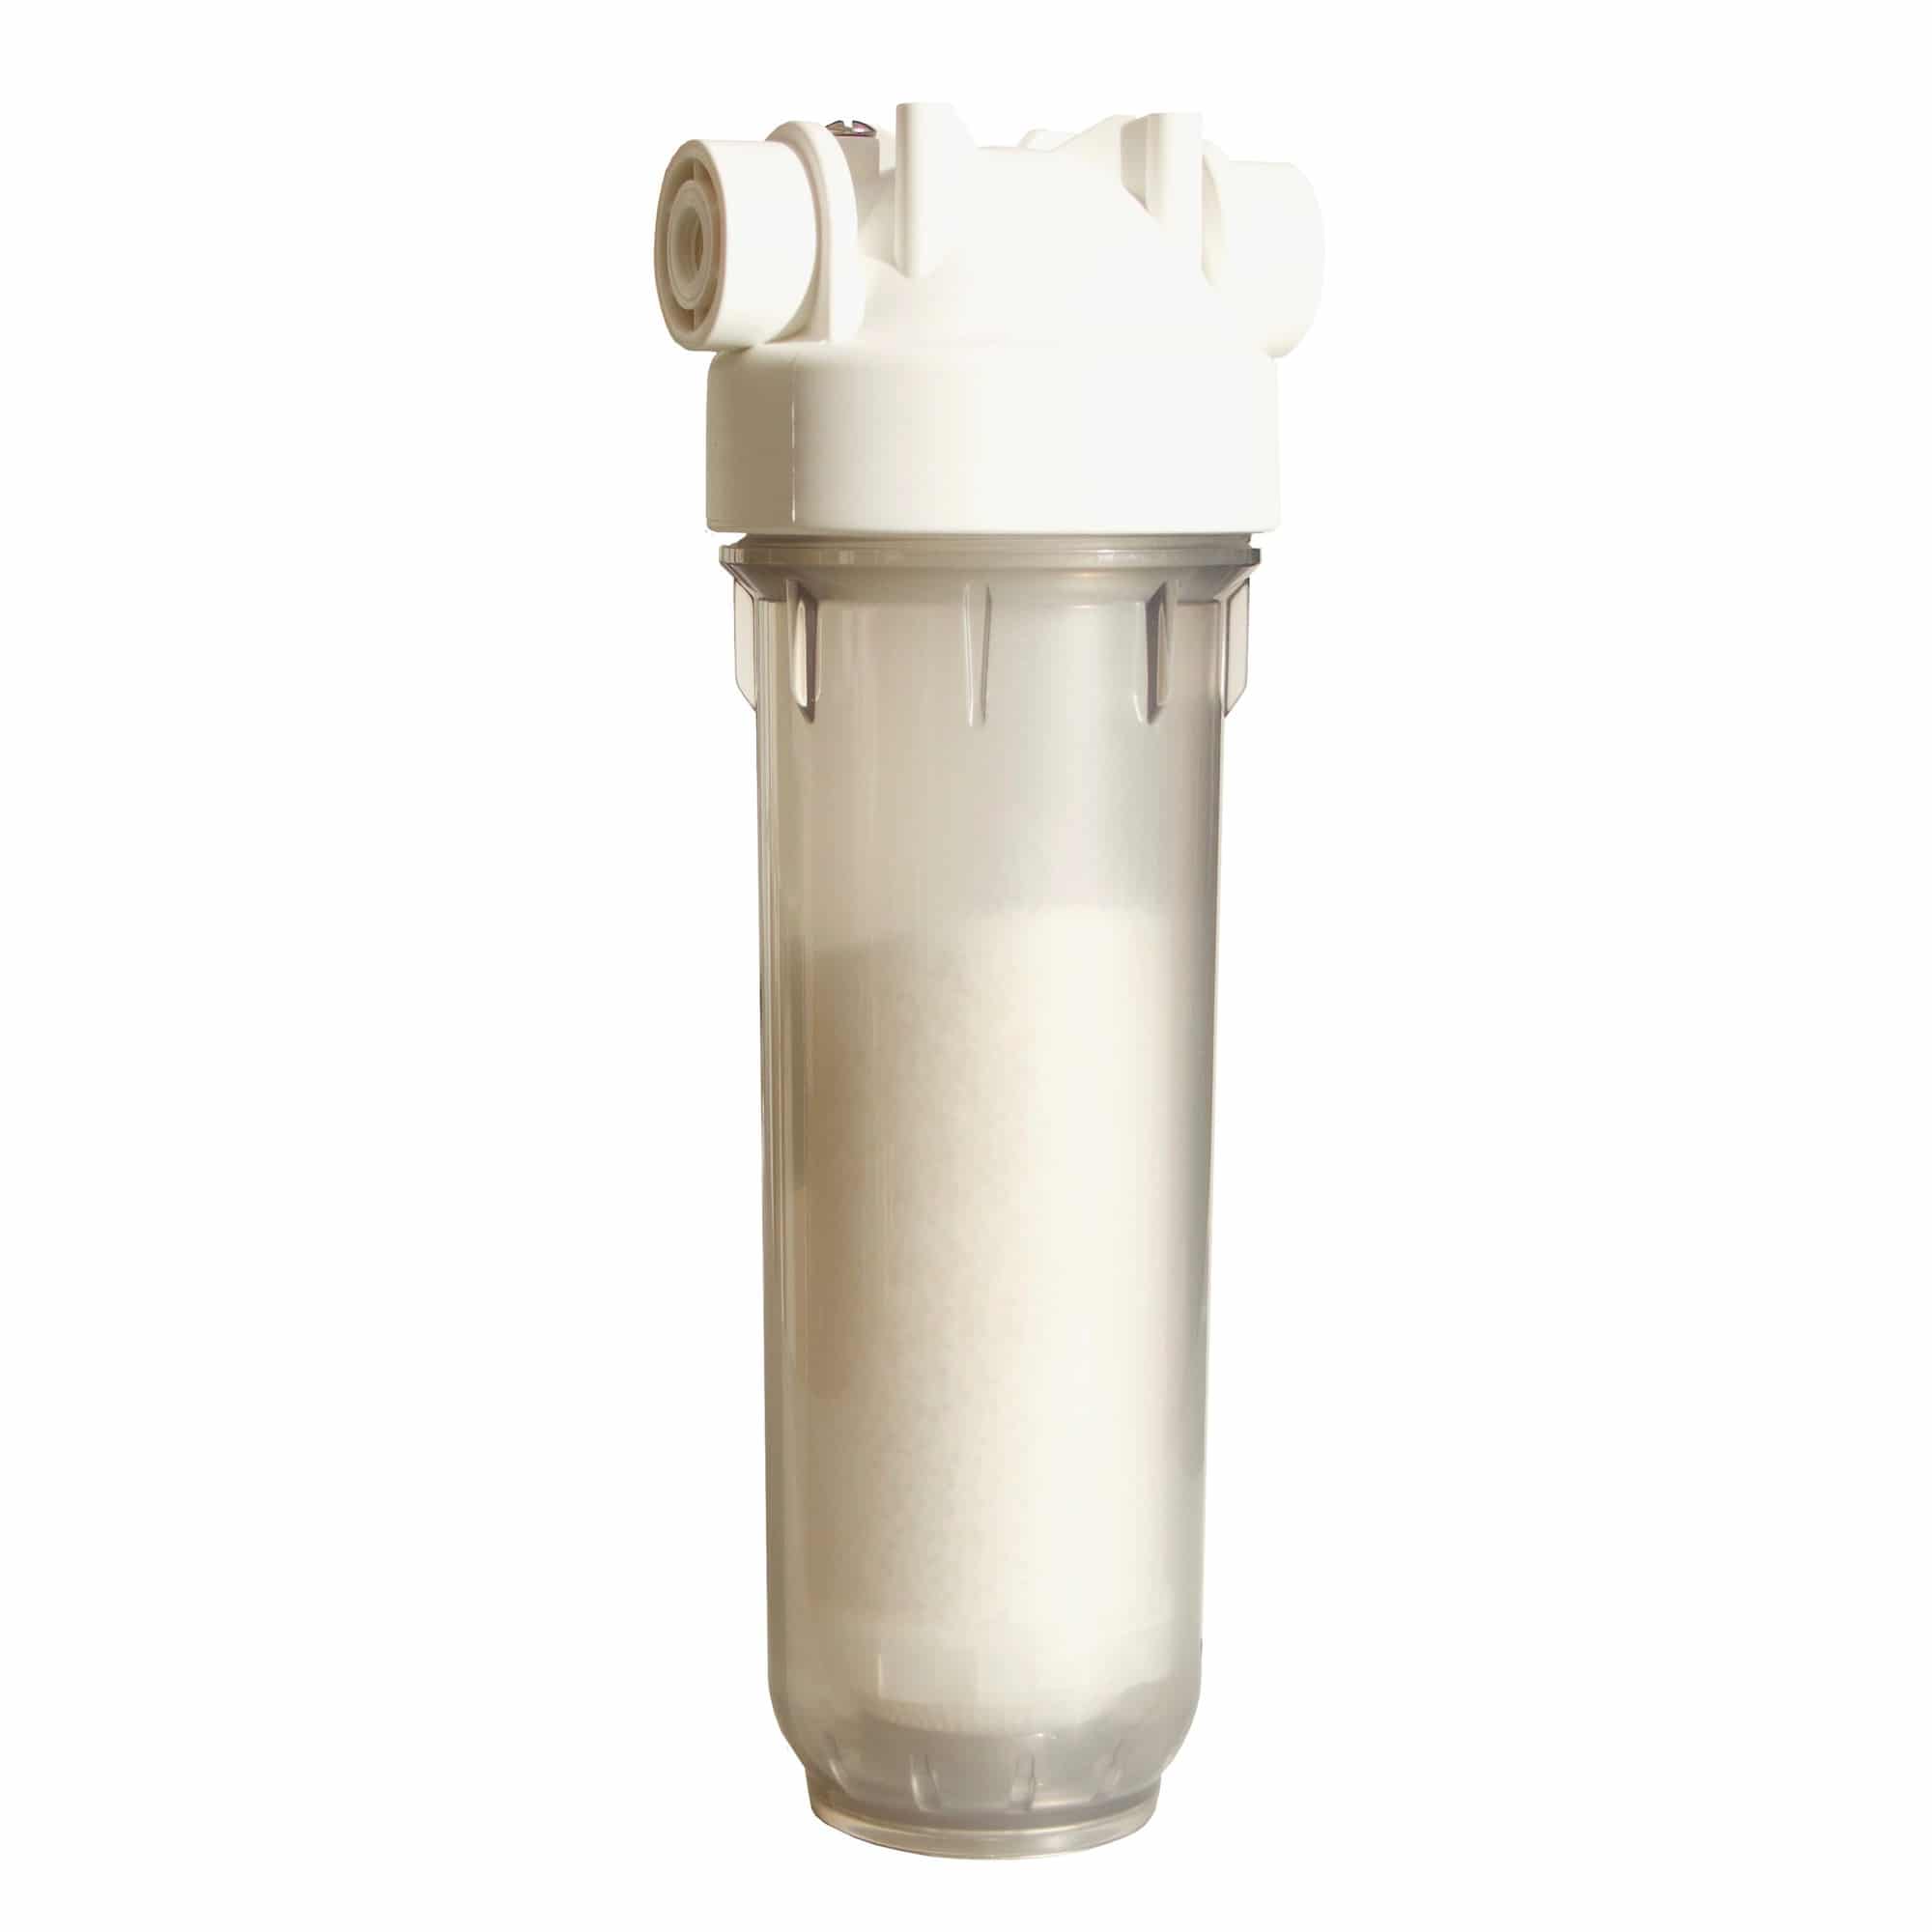 Фильтр смягчить воду. Фильтр умягчитель для воды DME GW-541 1/2. Магистральные фильтры Аква м. Сетчатый фильтр для смягчения воды egua. Магистральный фильтр Леруа.